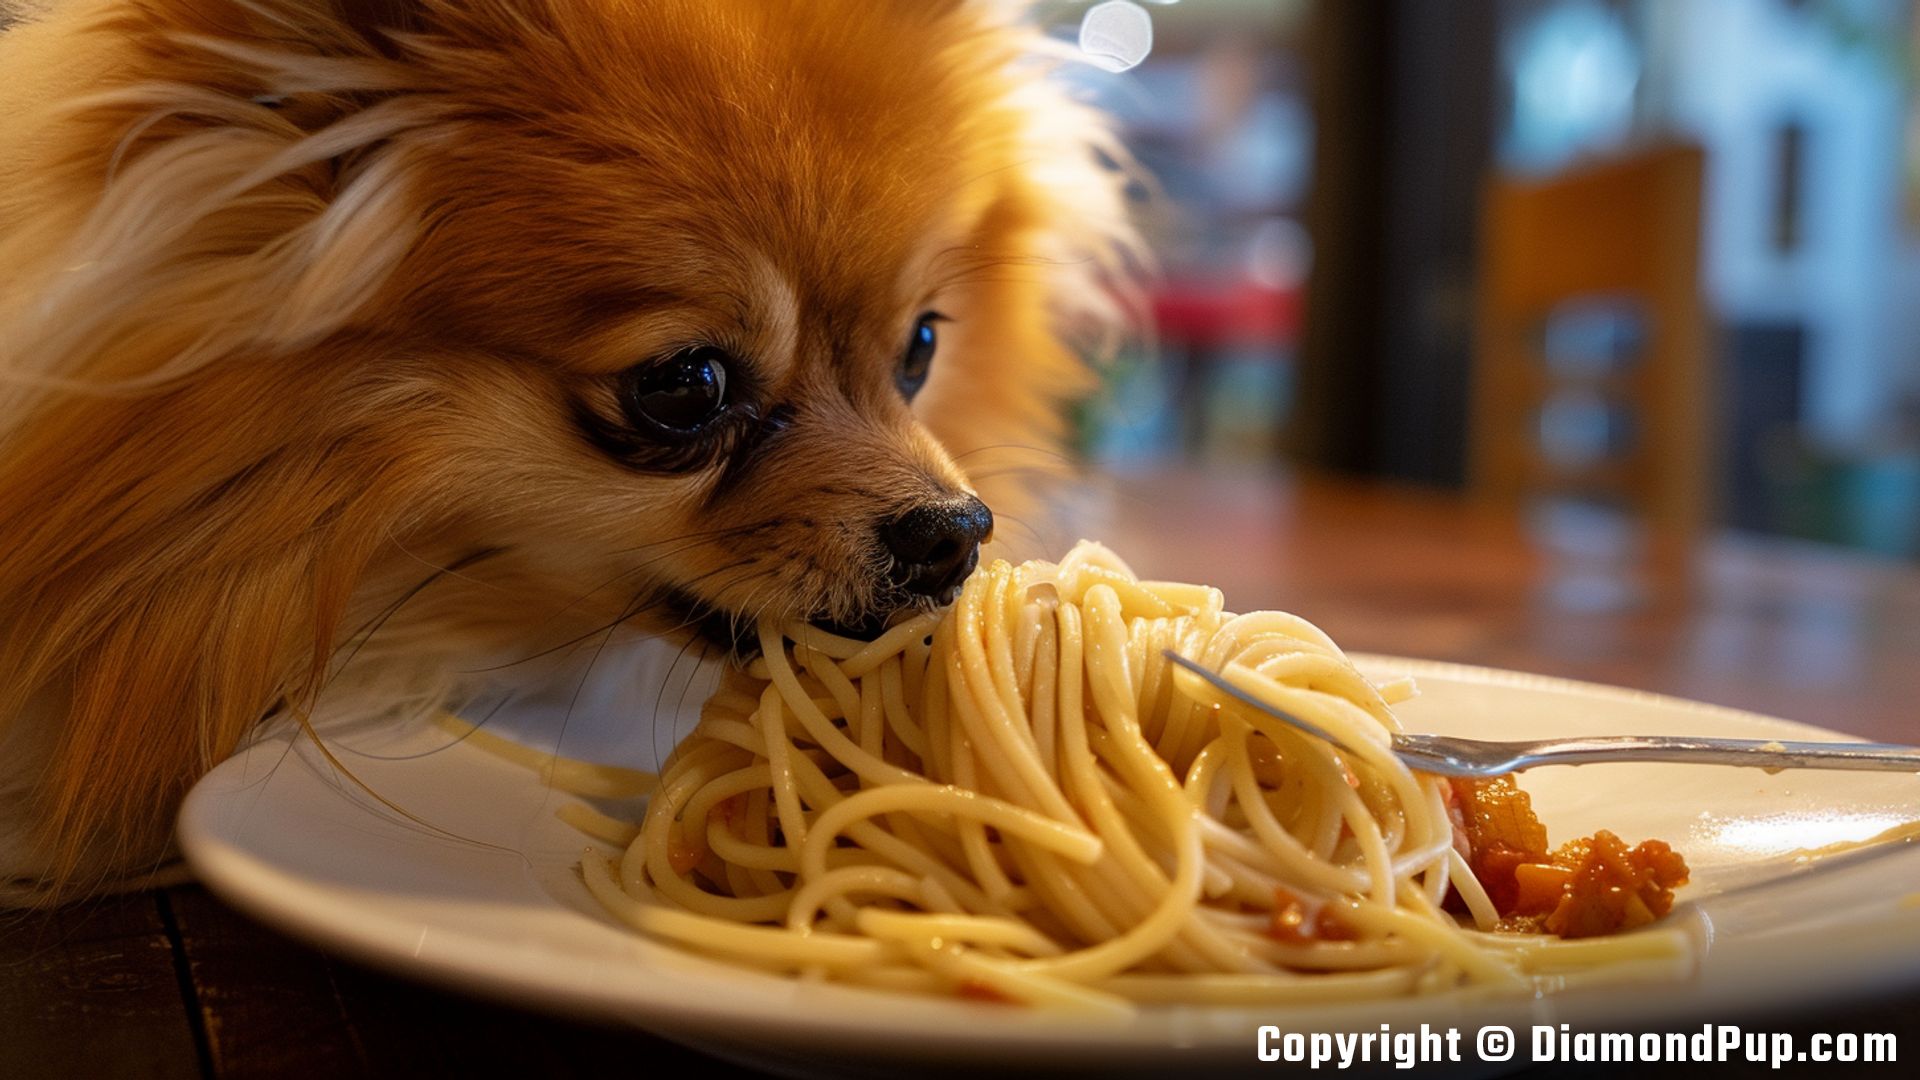 Photograph of a Playful Pomeranian Eating Pasta